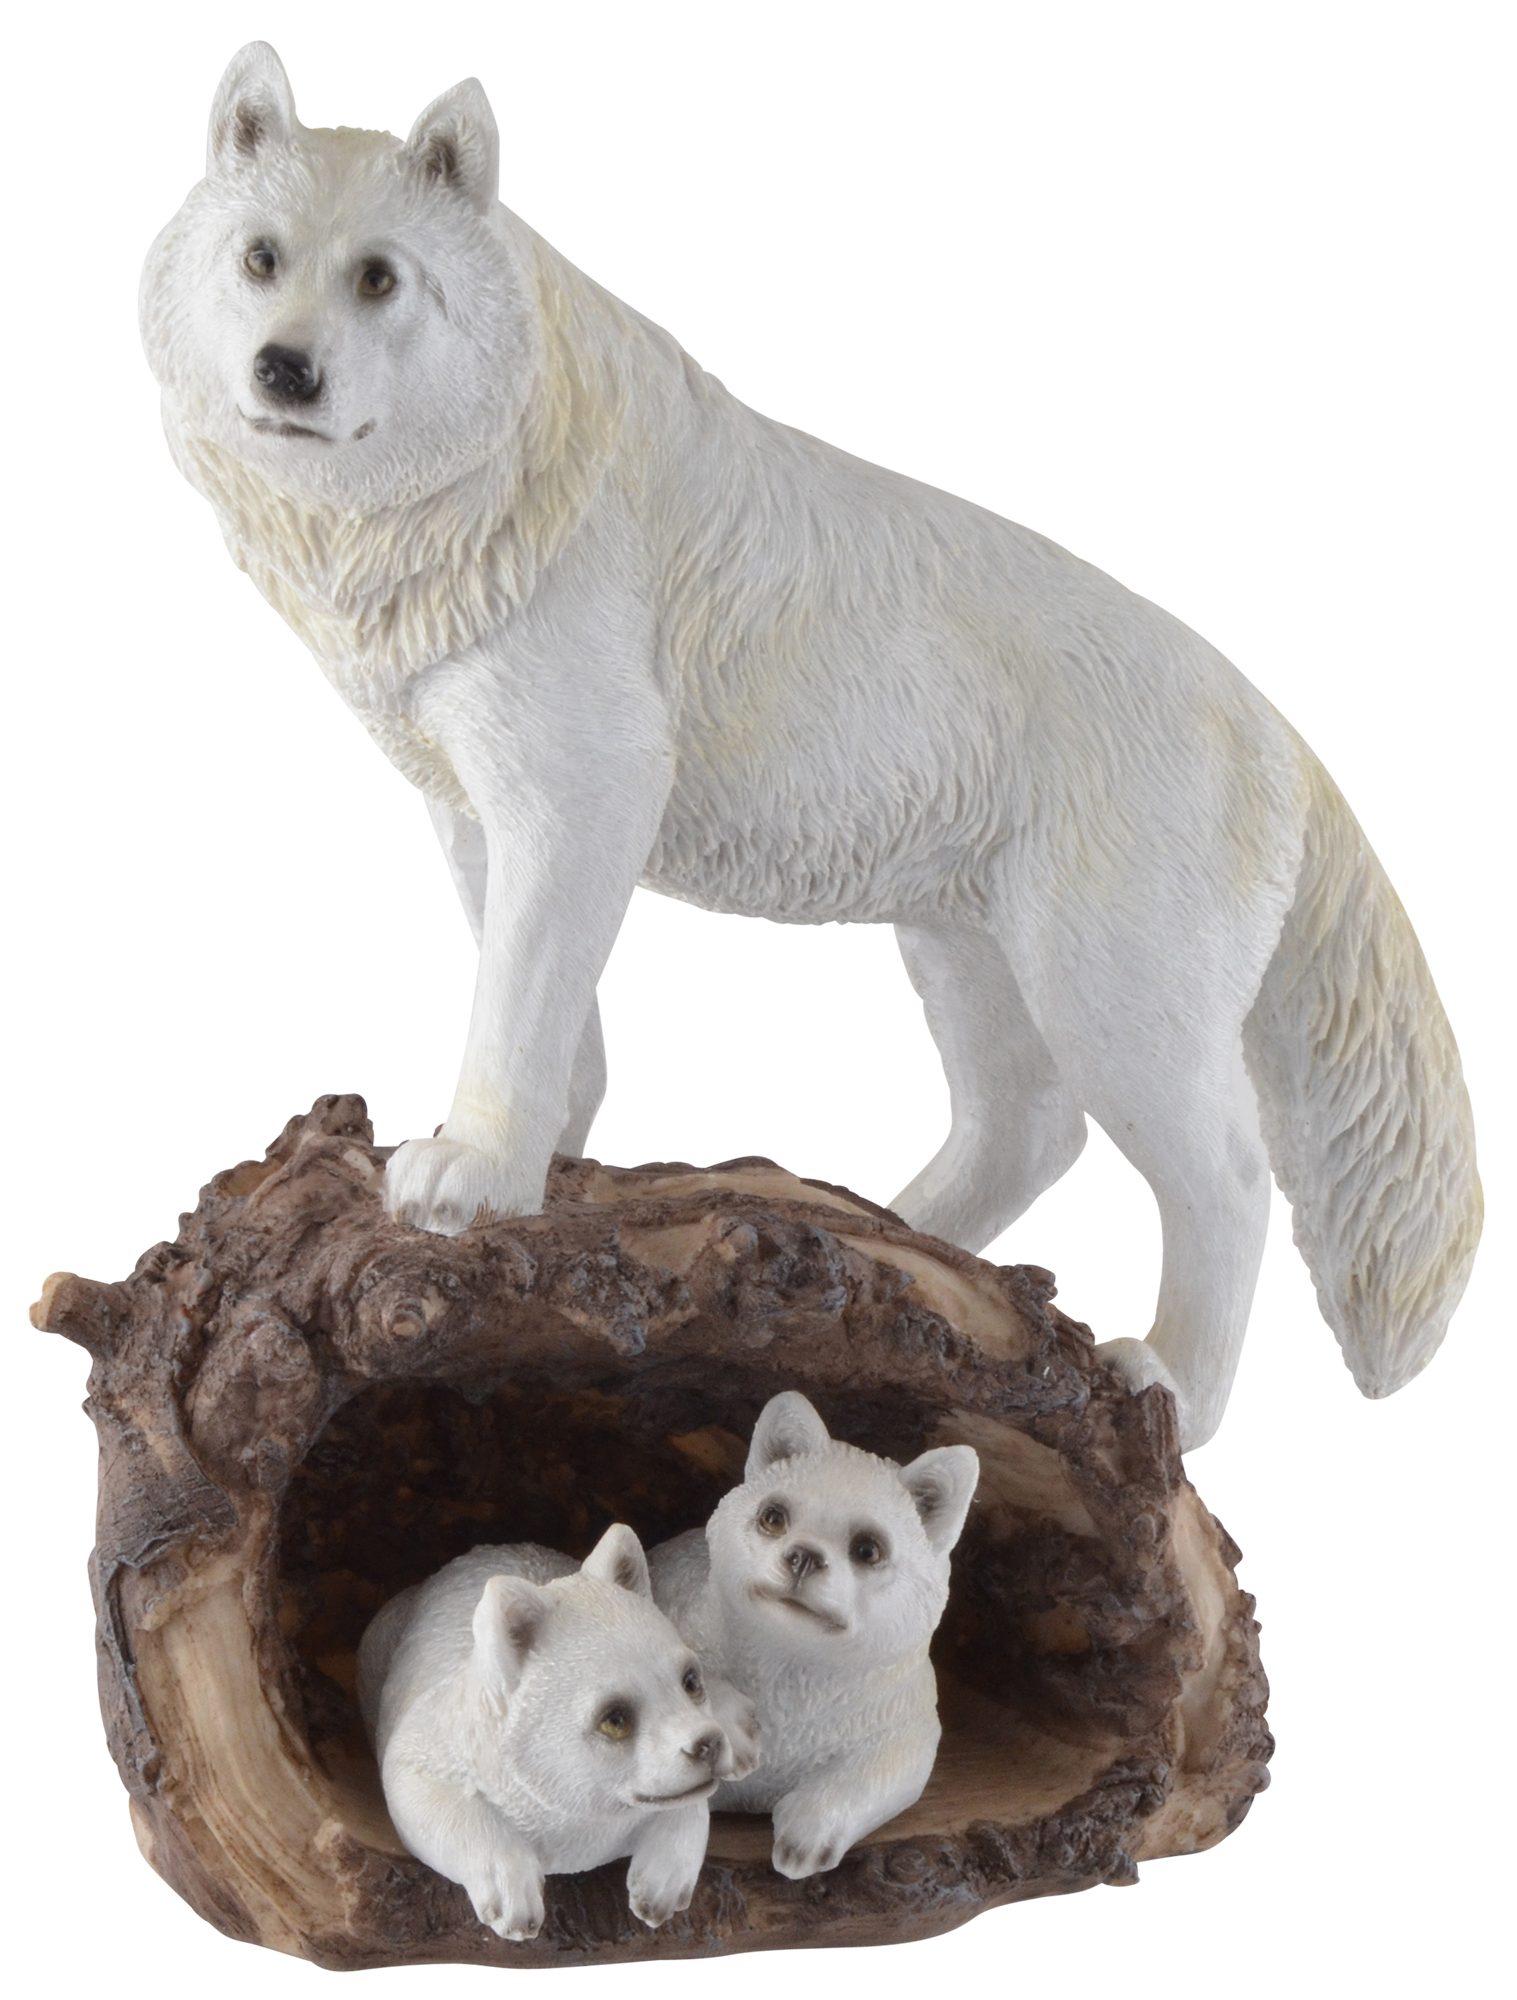 Vogler direct Gmbh Tierfigur Schneewolf mit zwei Jungen in einem Baumstamm, Kunststein, handbemalt, coloriert, LxBxH ca. 22x13x26 cm